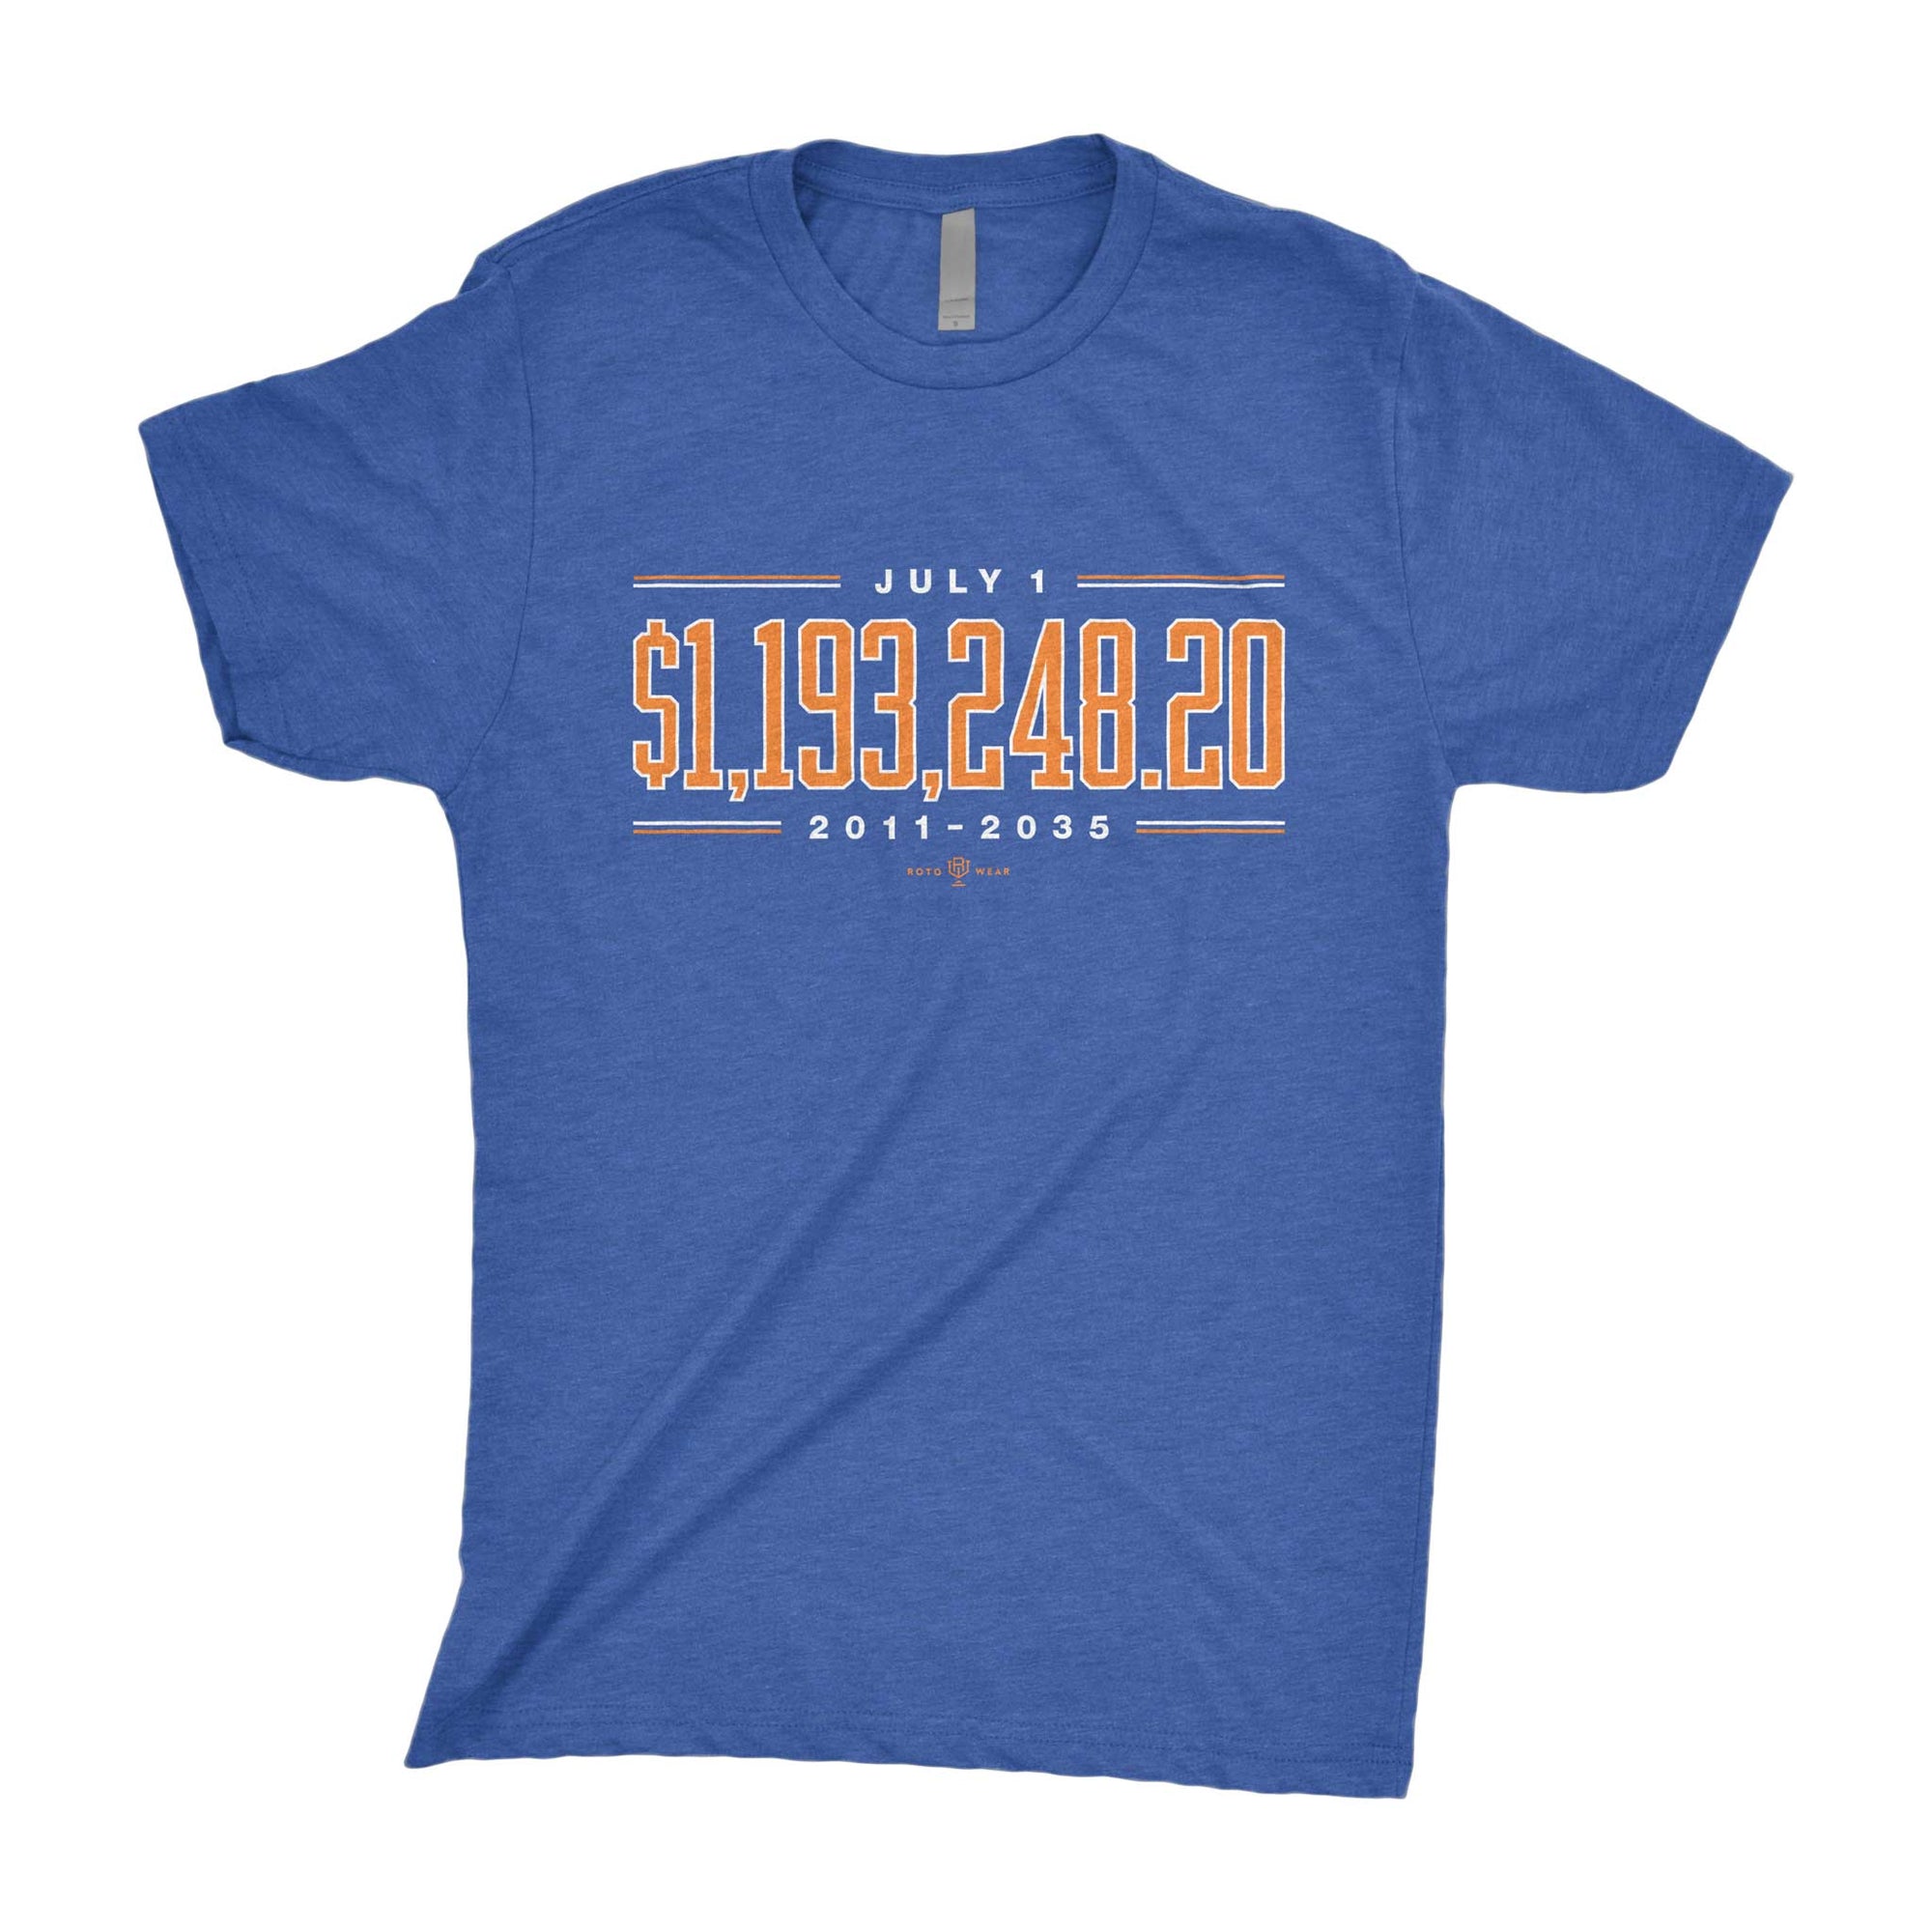 $1,193,248.20 Bobby Bonilla Day Shirt